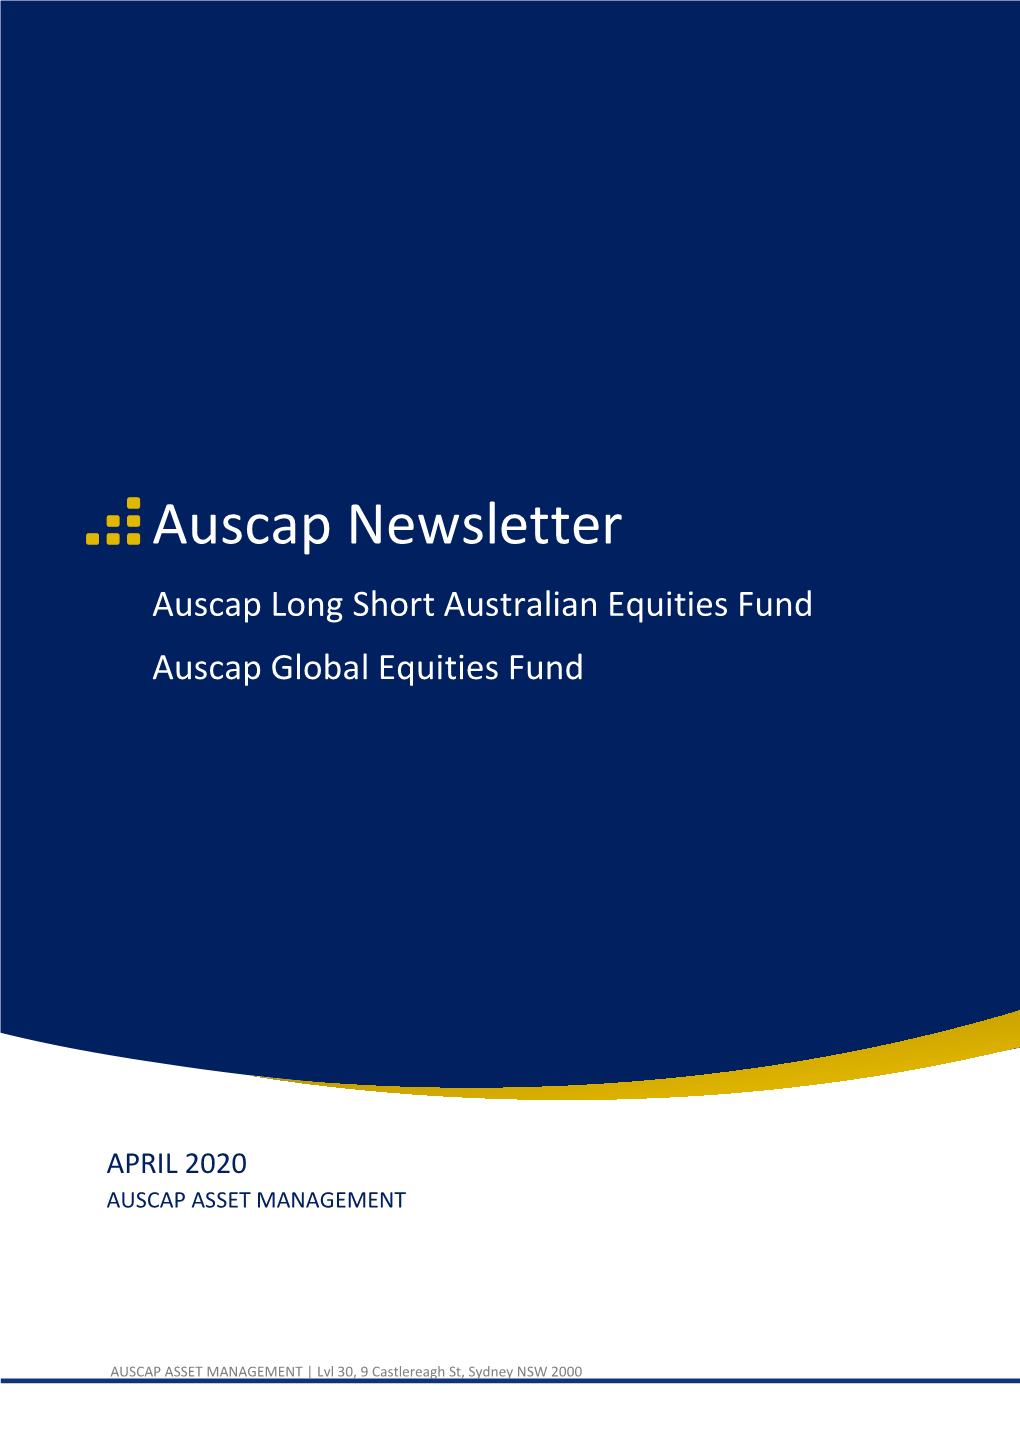 Auscap Newsletter – April 2020